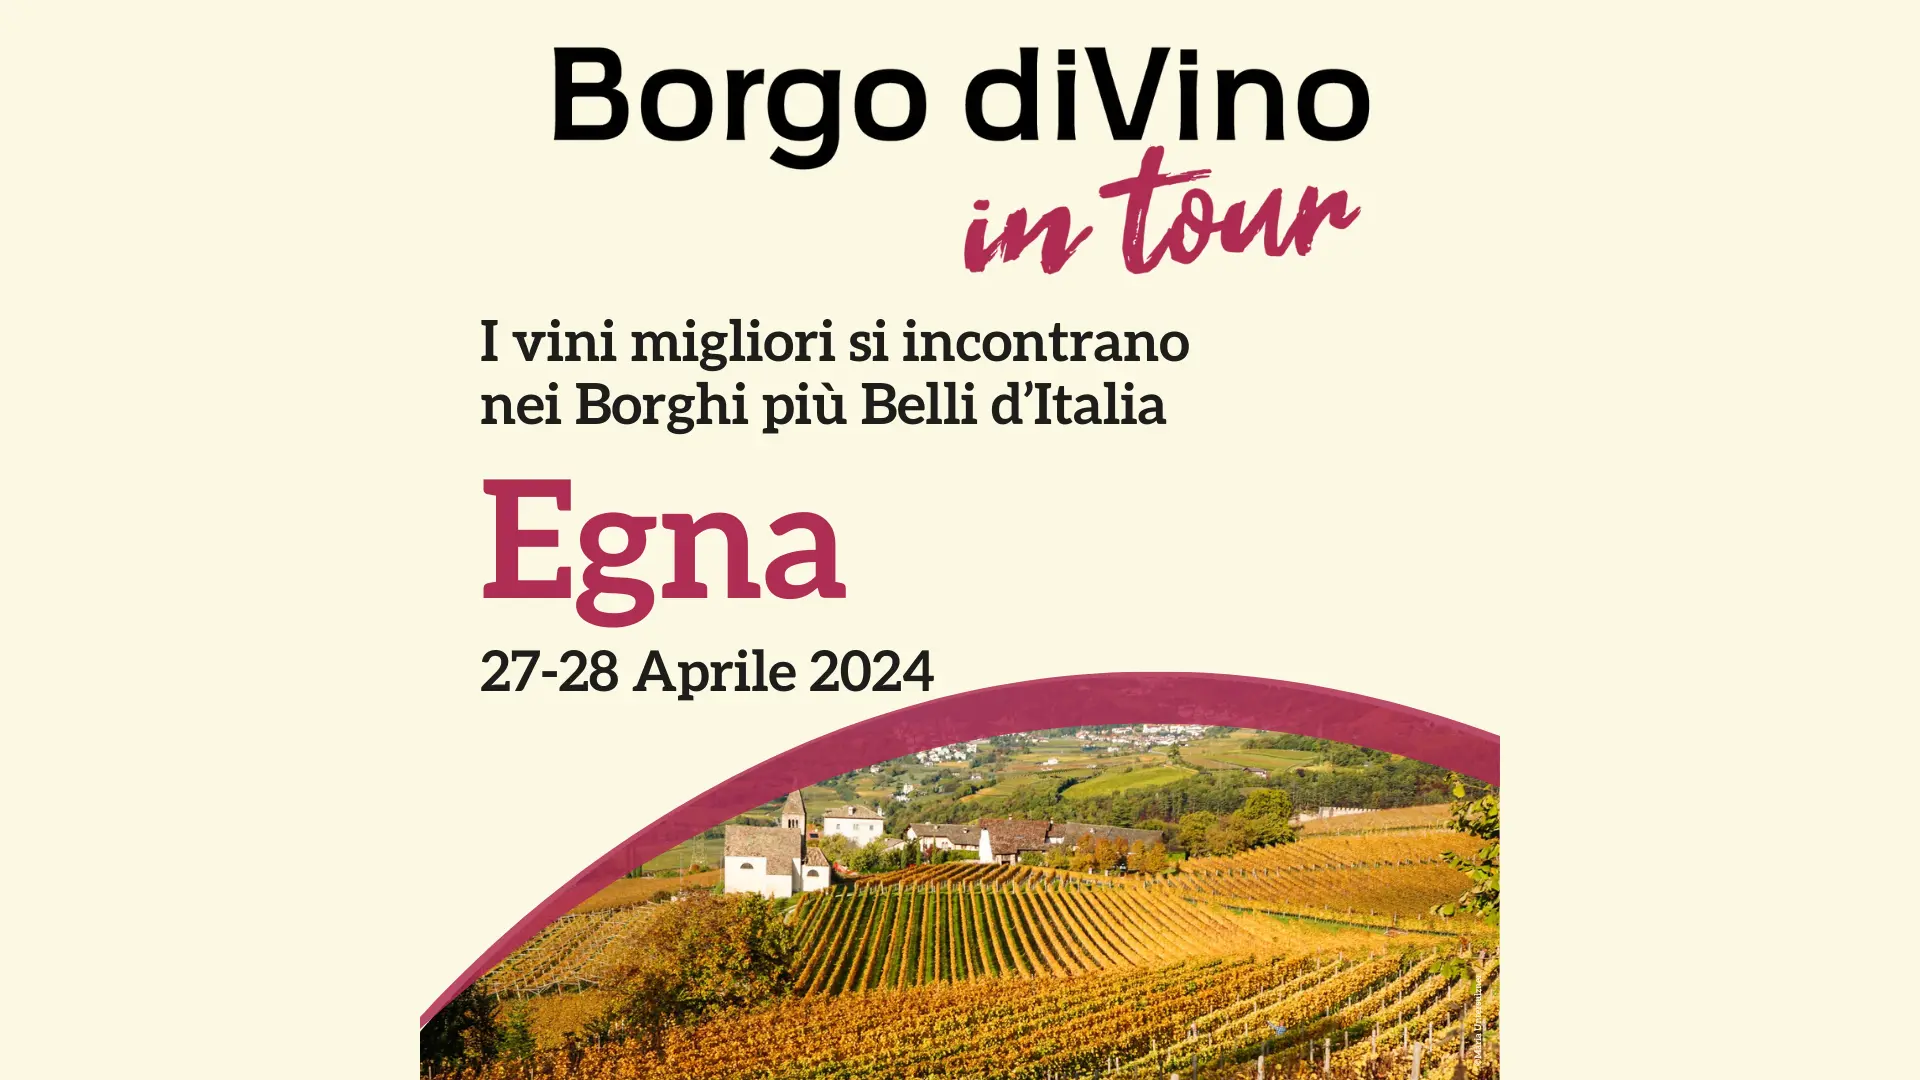 I vini migliori si incontrano nei Borghi più Belli d’Italia: la prima tappa di Borgo diVino in Tour a Egna Neumarkt (BZ) il 27 e 28 aprile 2024